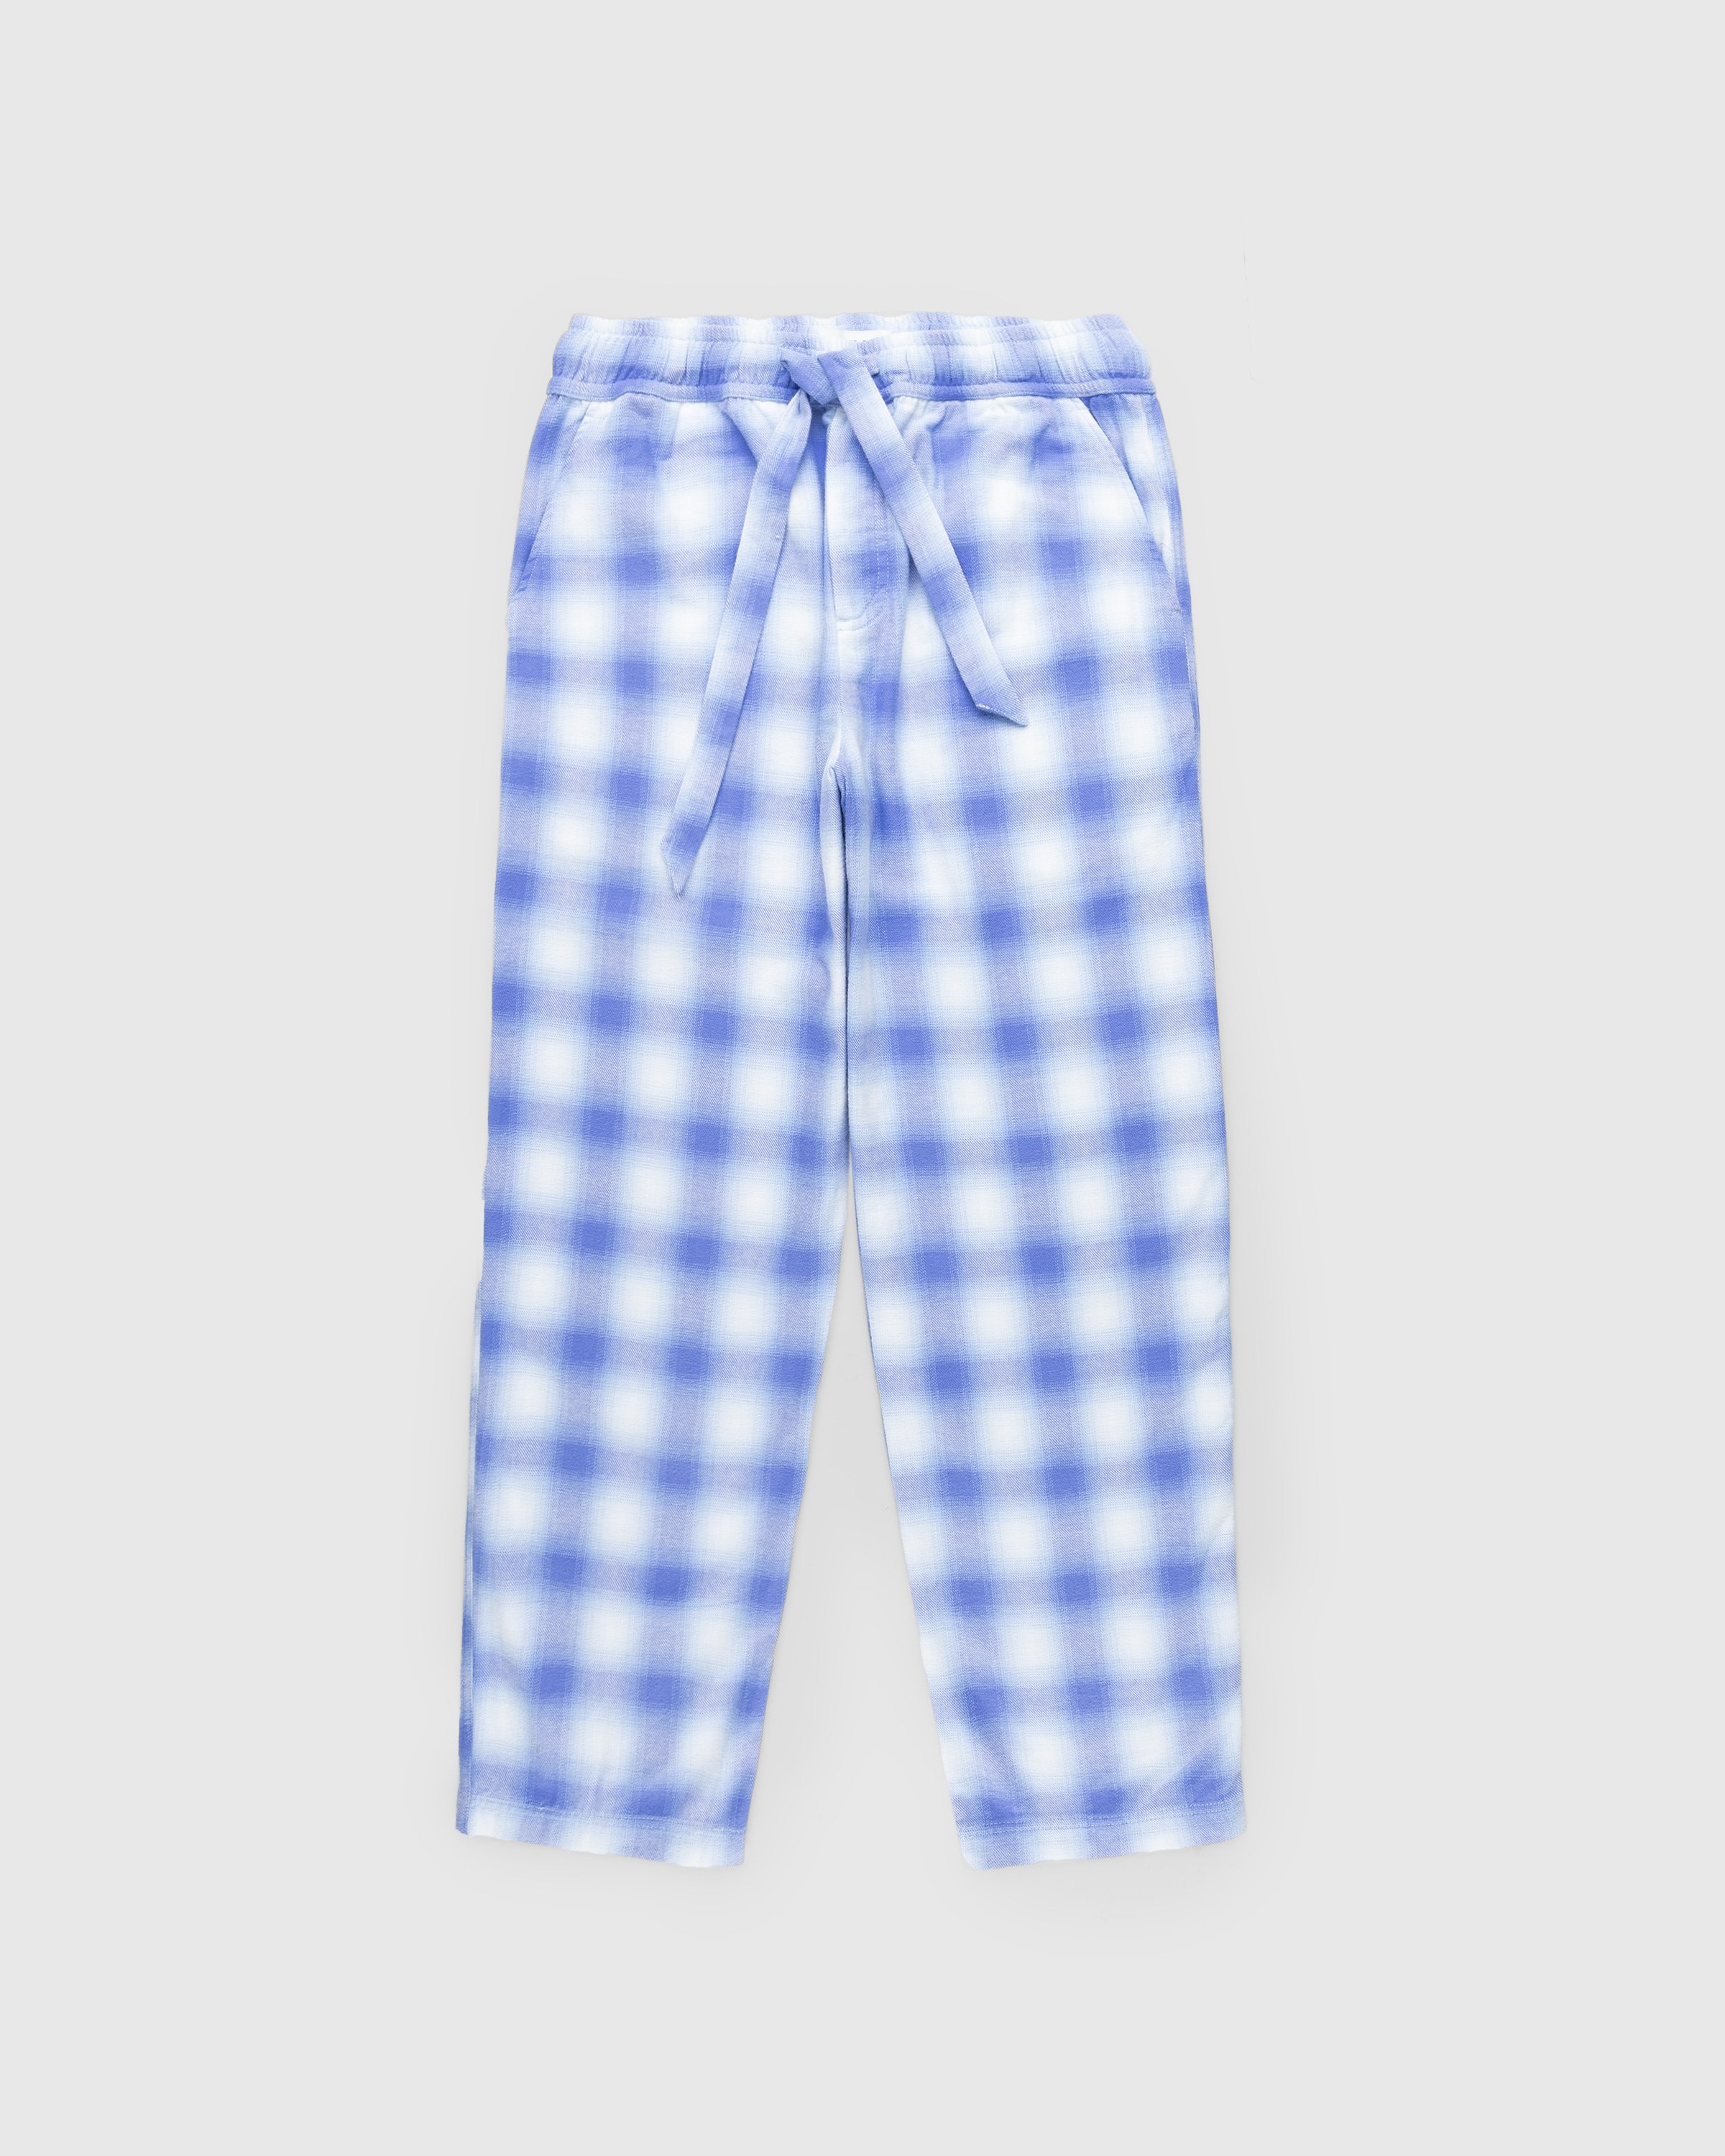 Tekla – Flannel Pyjamas Pants Light Blue Plaid